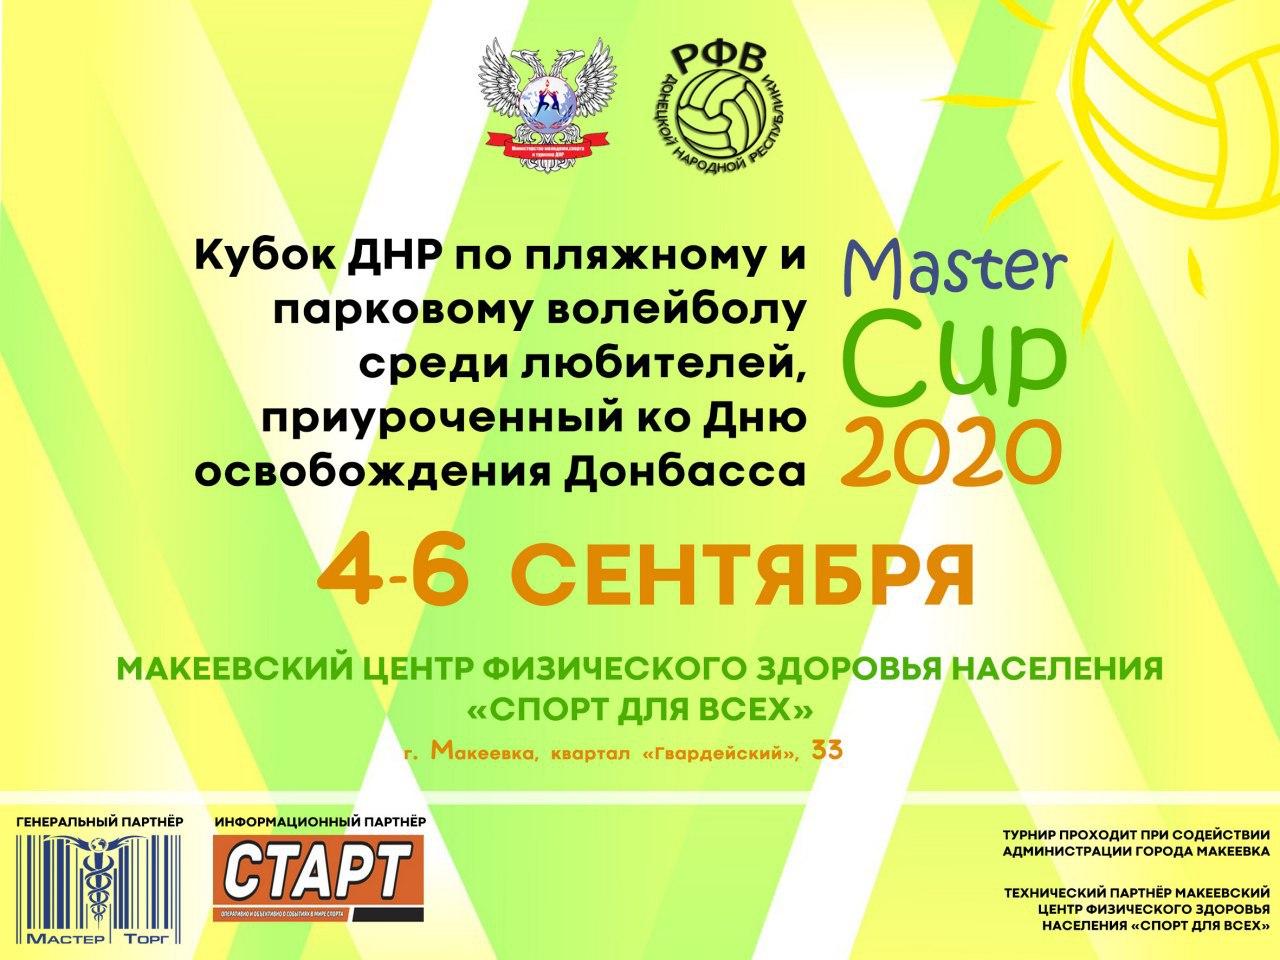 Открыта регистрация на участие в «Master Cup 2020»